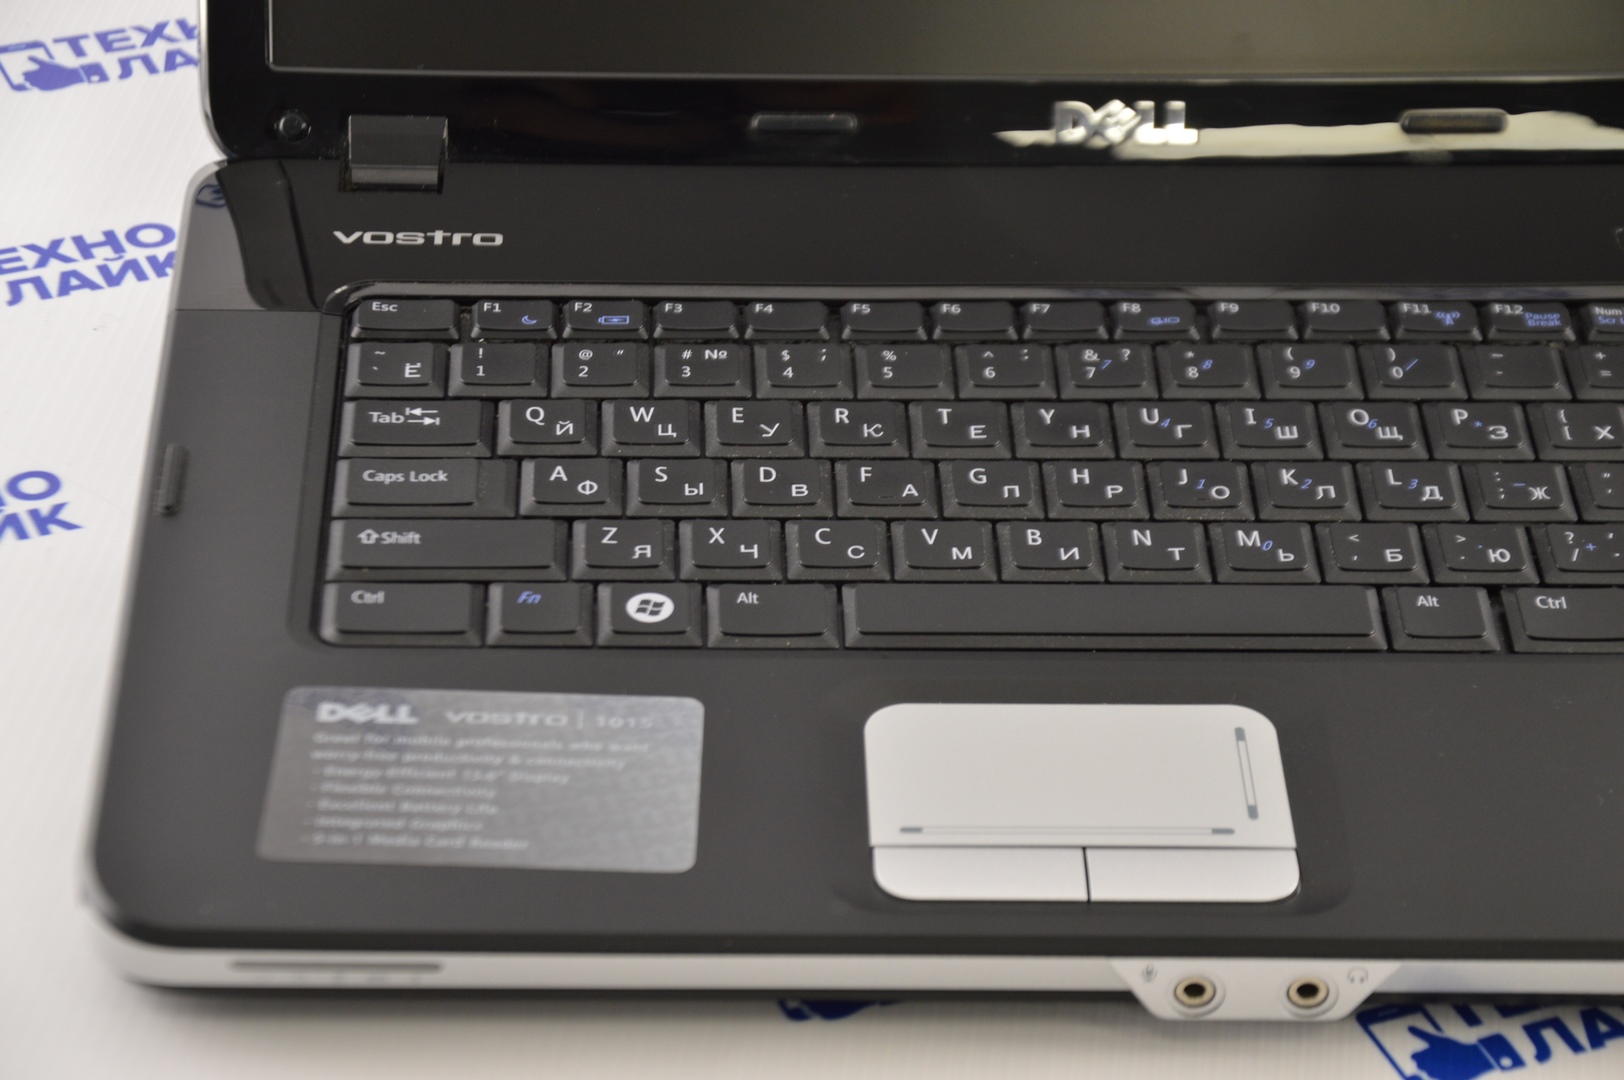 Intel gma x3100. Ноутбук dell Vostro 1015. Vostro 1015 8761. Dell Vostro 1015  2010 года выпуска.